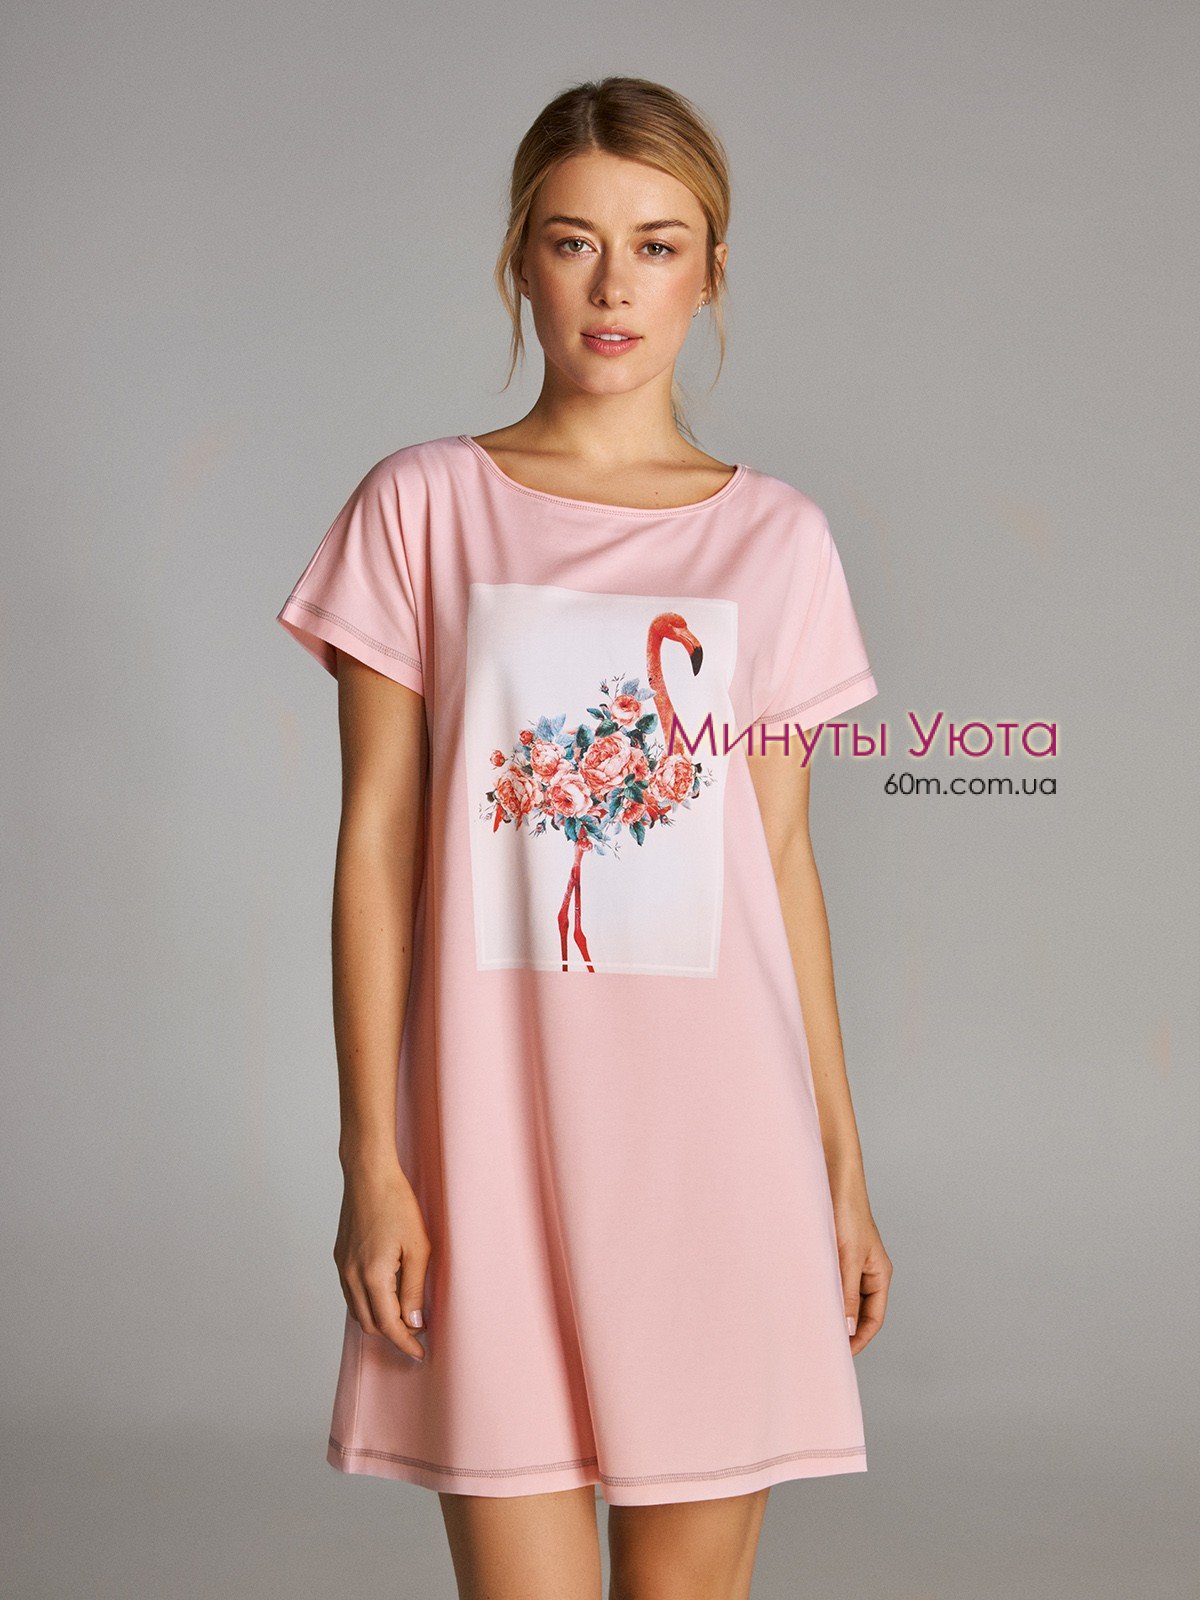 Женская ночная сорочка с принтом фламинго в розовом цвете свободного кроя Ellen